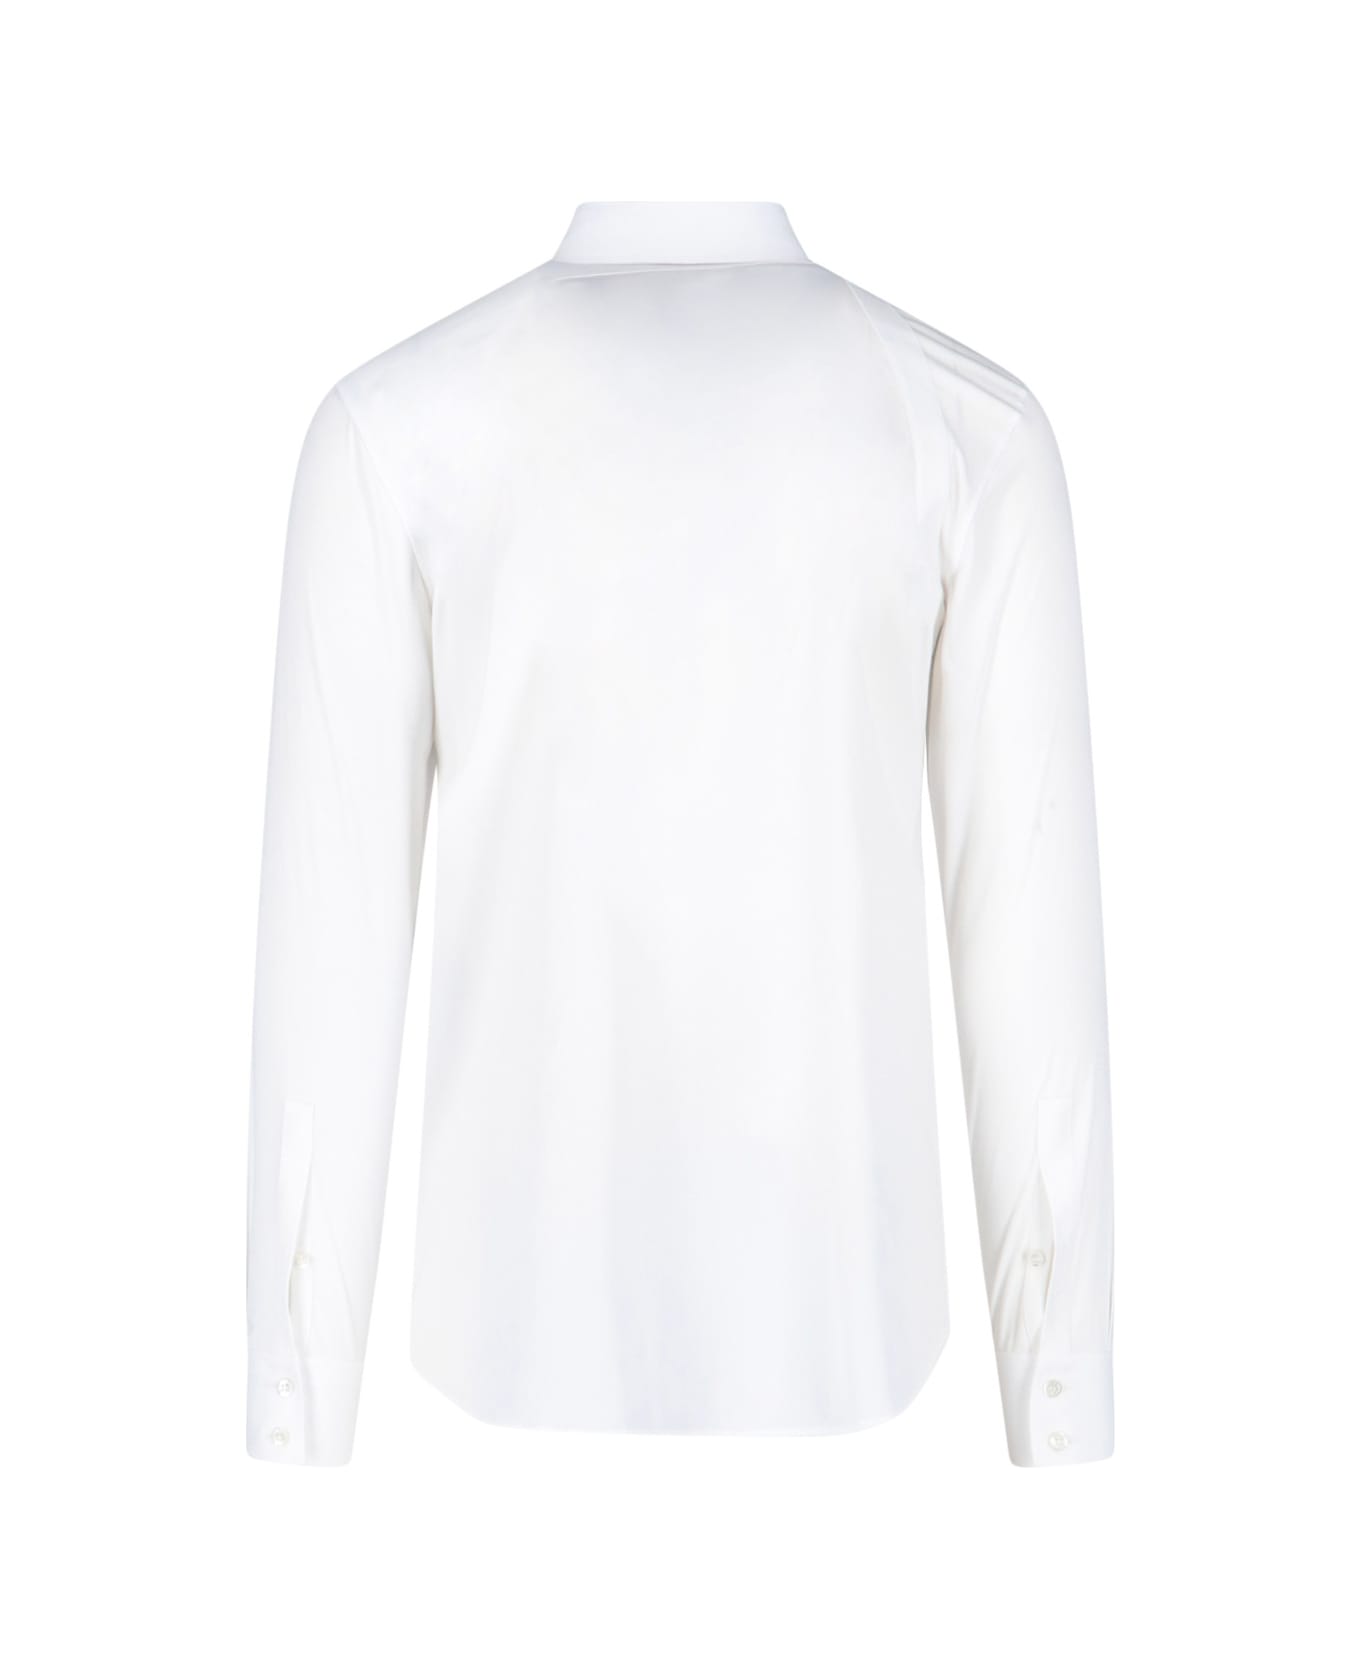 Alexander McQueen Harness Shirt - White シャツ